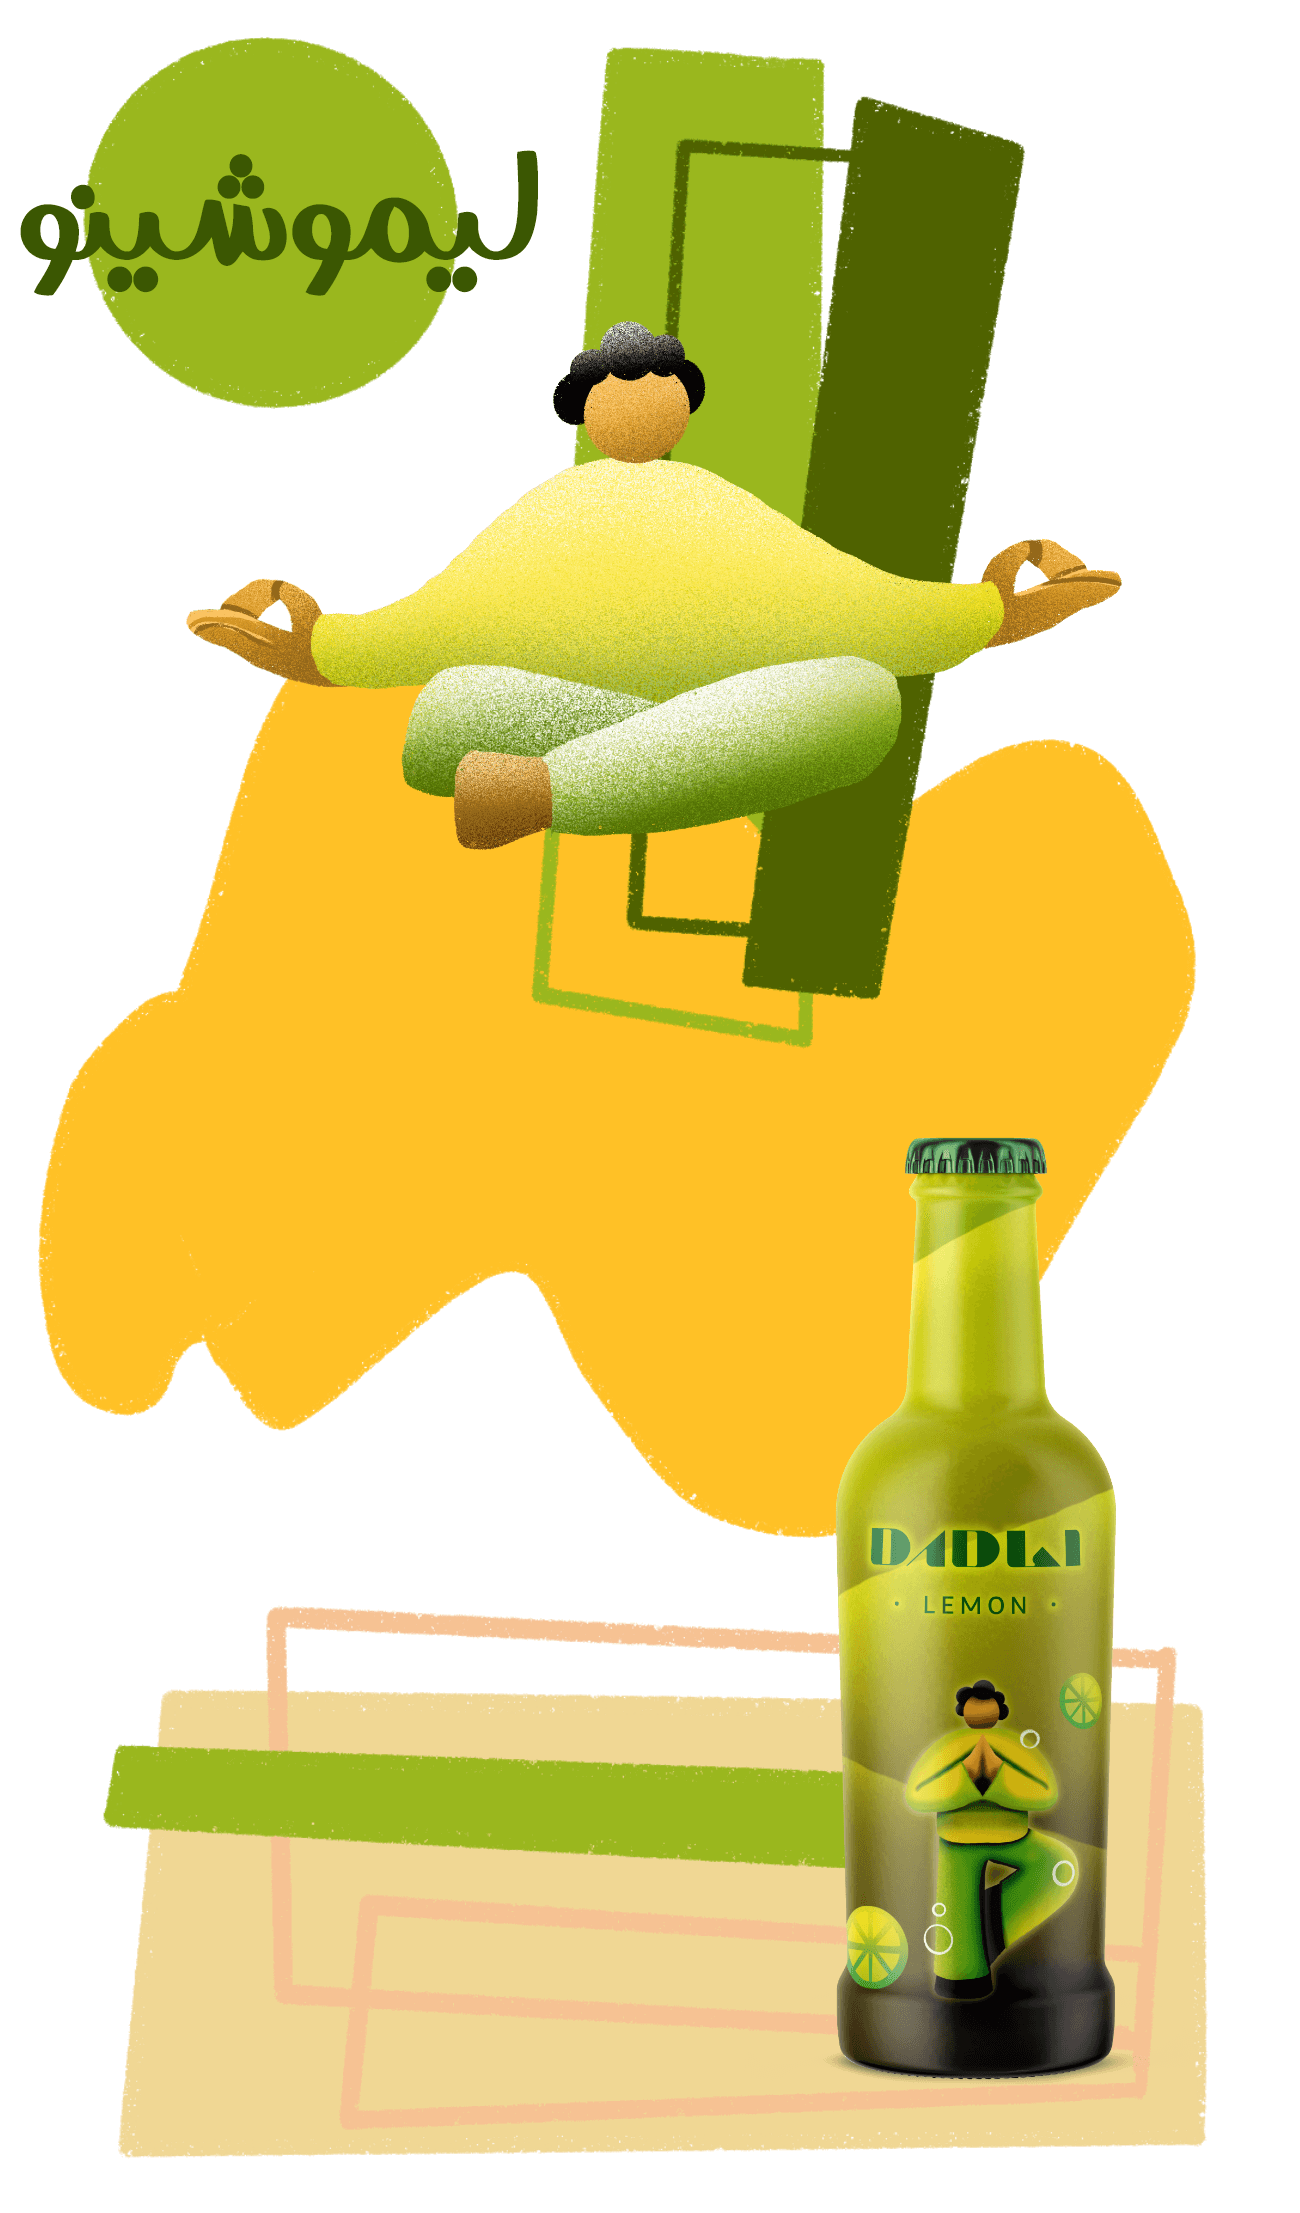 طراحی بسته بندی نوشیدنی دادلی بهنوش - استودیو نهاکی packaging design dadli behnoosh - nahaki design team